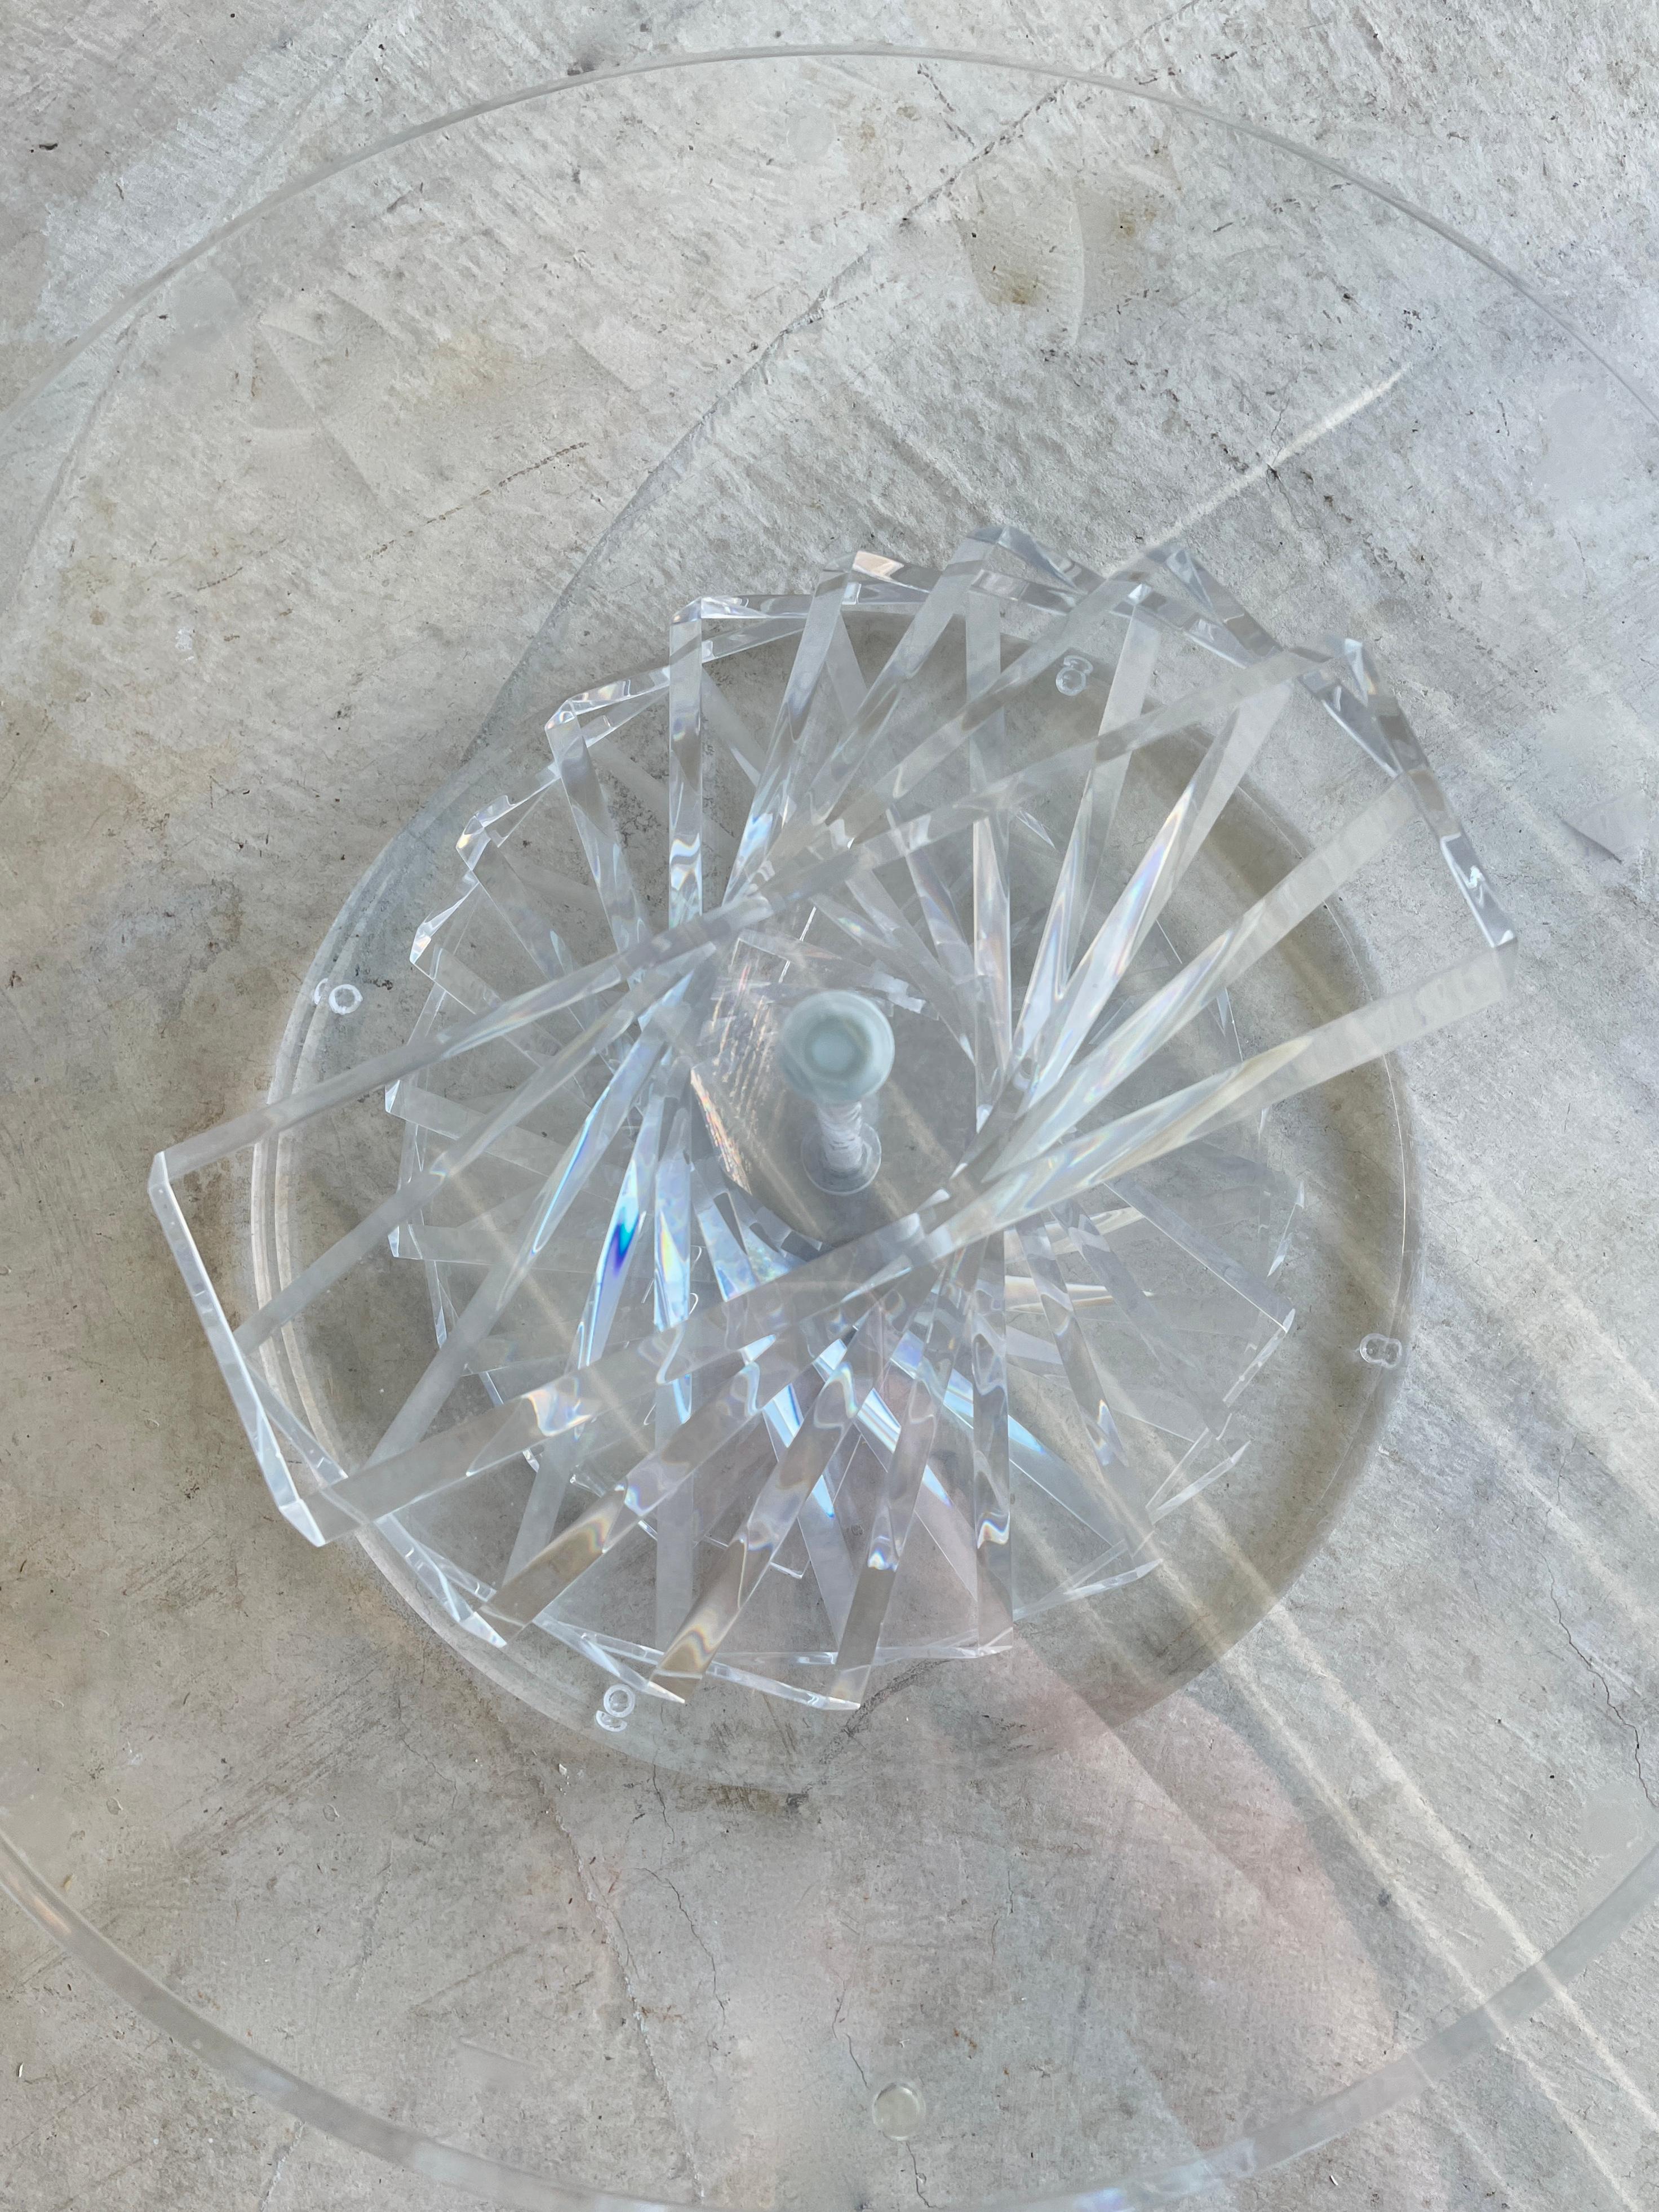 Helix Spiral Couchtisch aus Lucite und Glas.